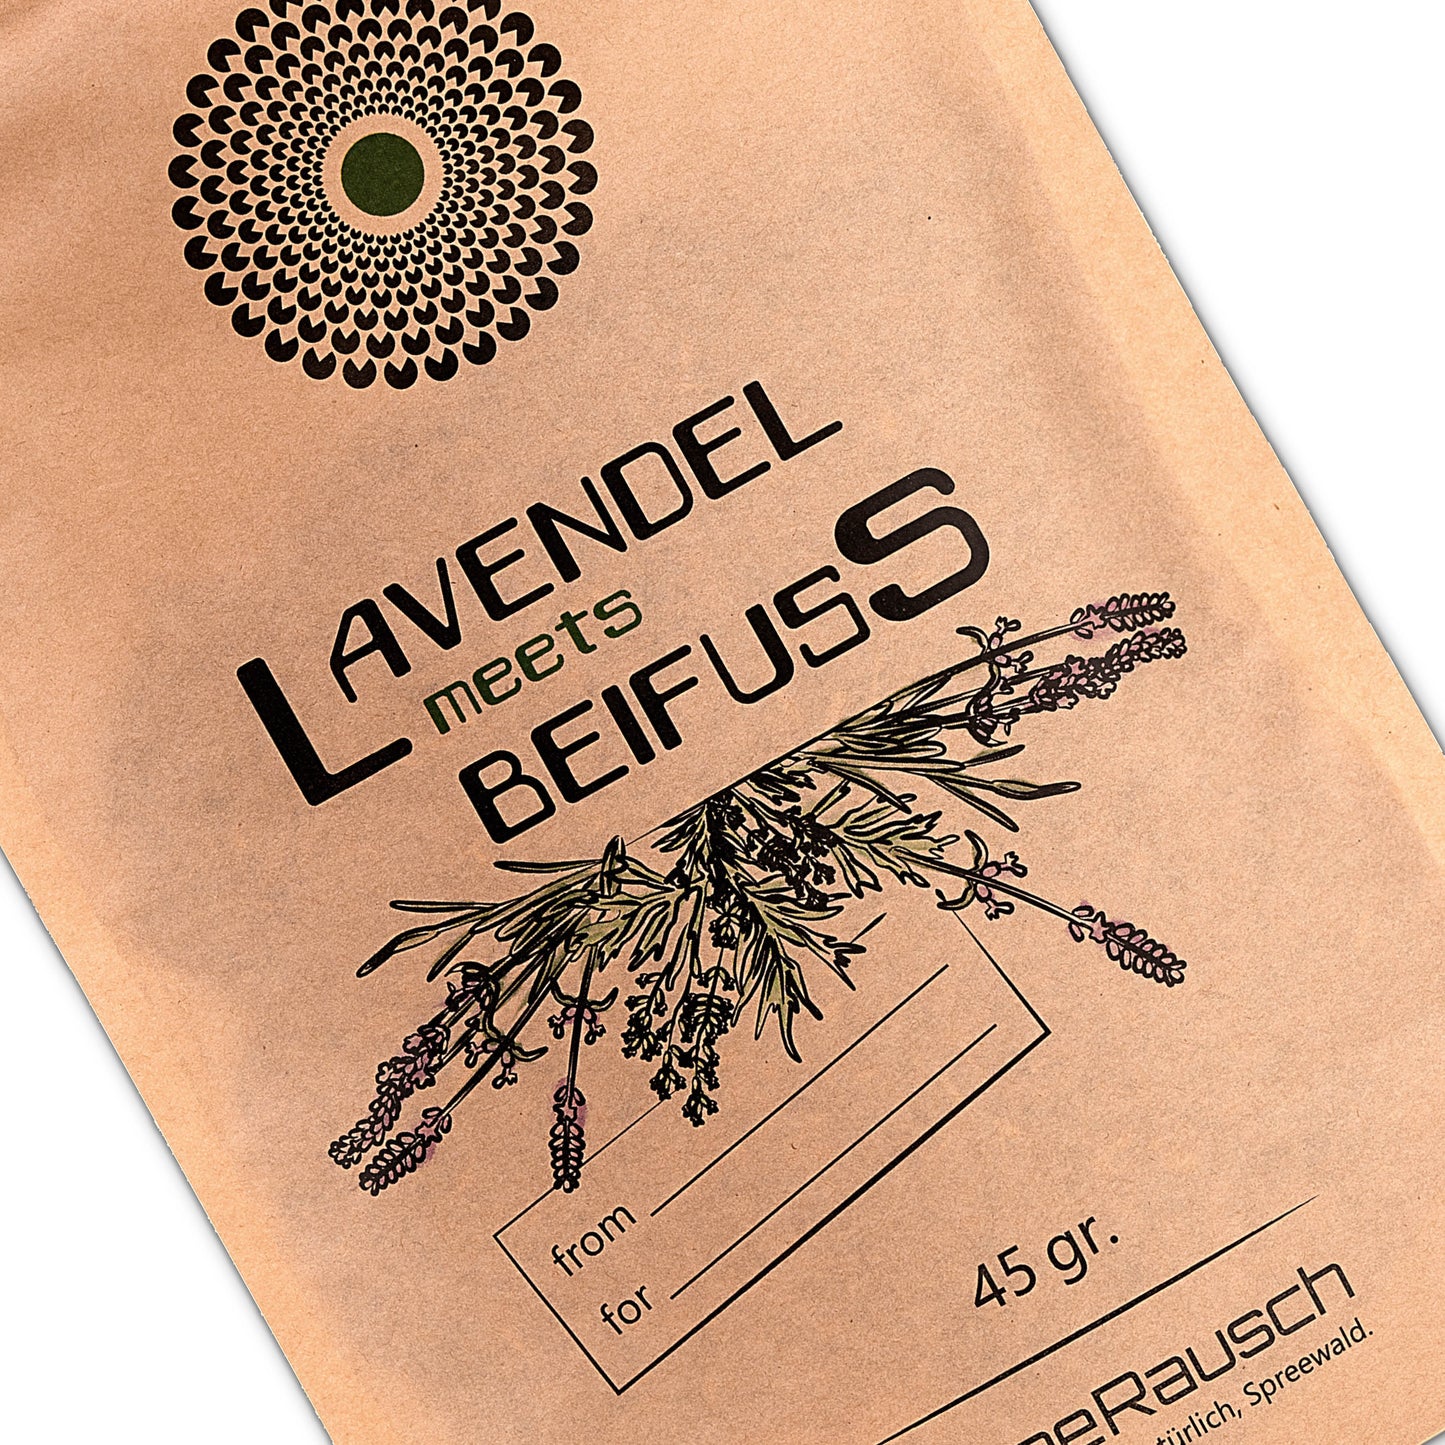 Lavendel Beifuss Tee-Mischung von SpreeRauch, die ORIGINAL Kräutermischung für viele Verwenungsmöglichkeiten